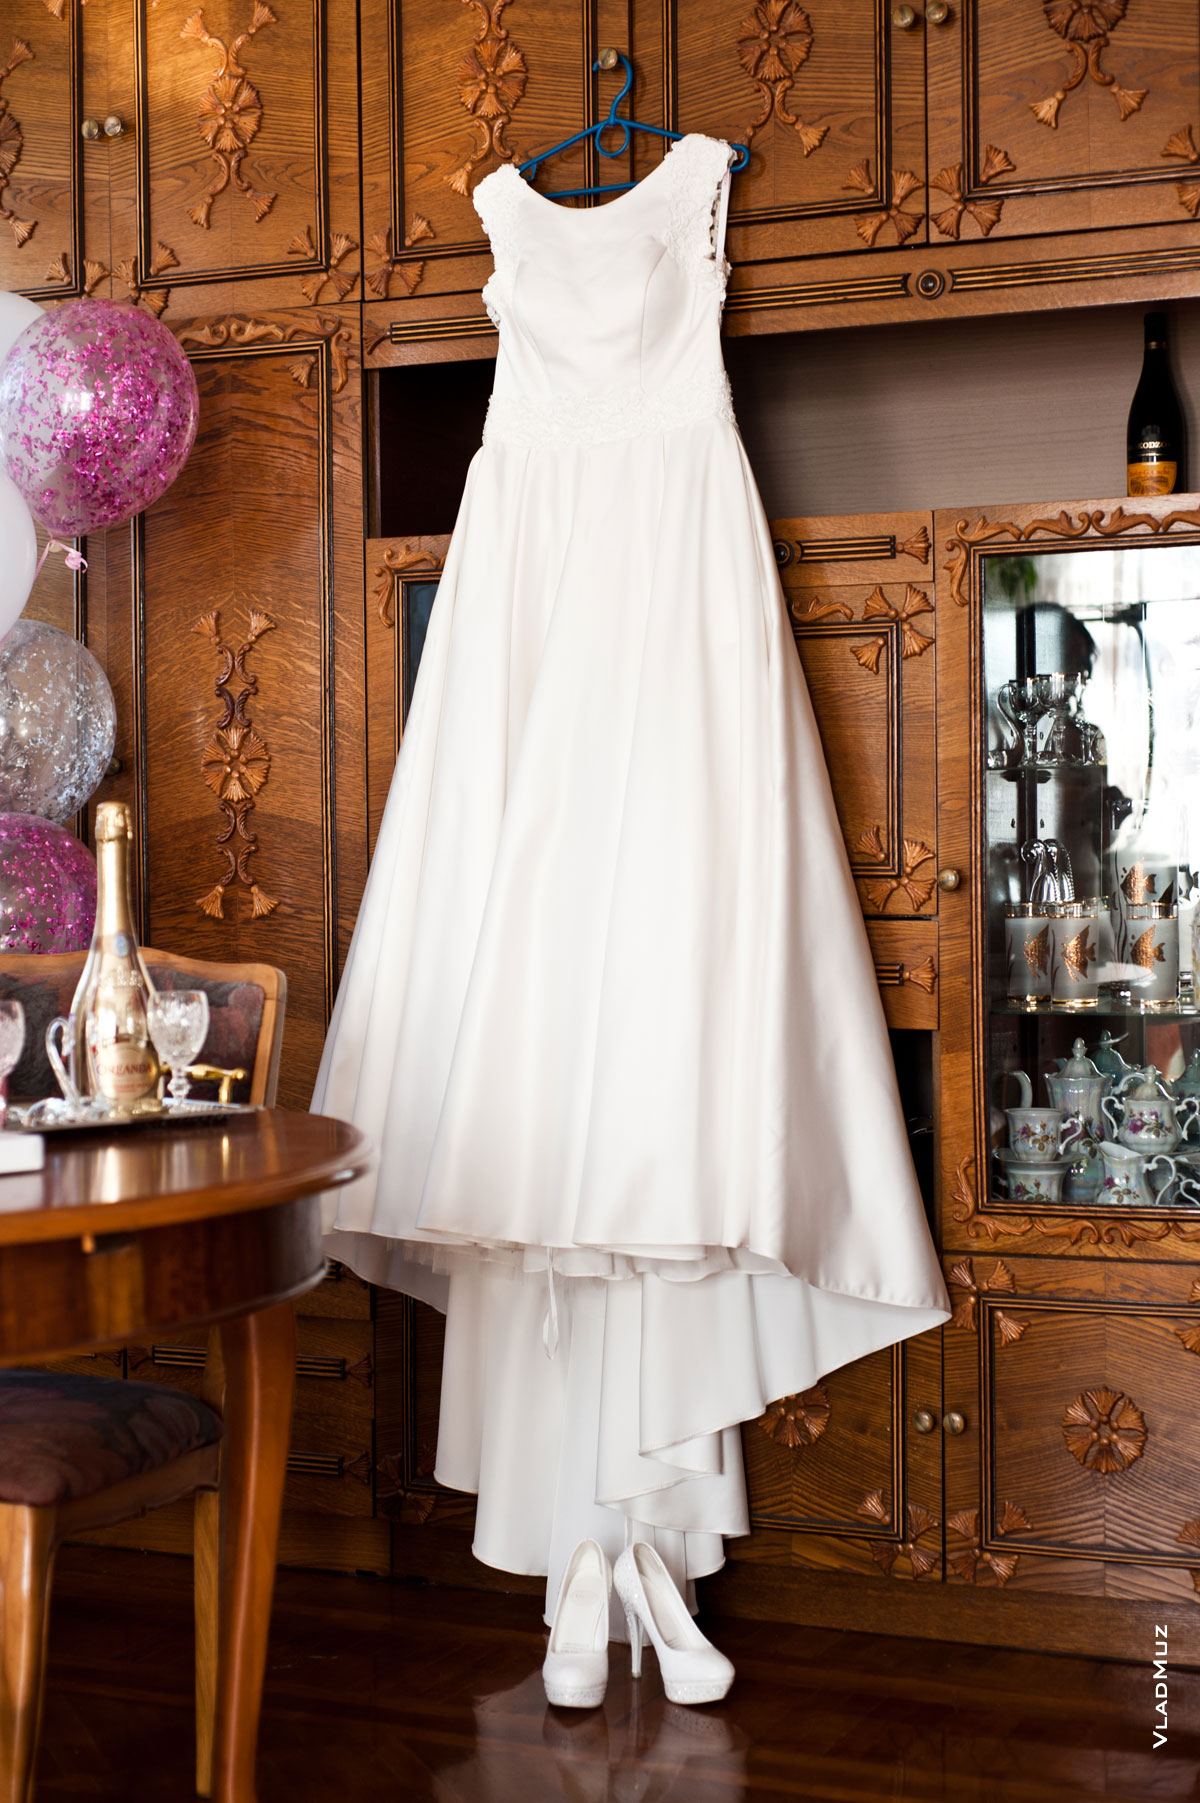 Фото свадебного платья на вешалке и туфель невесты